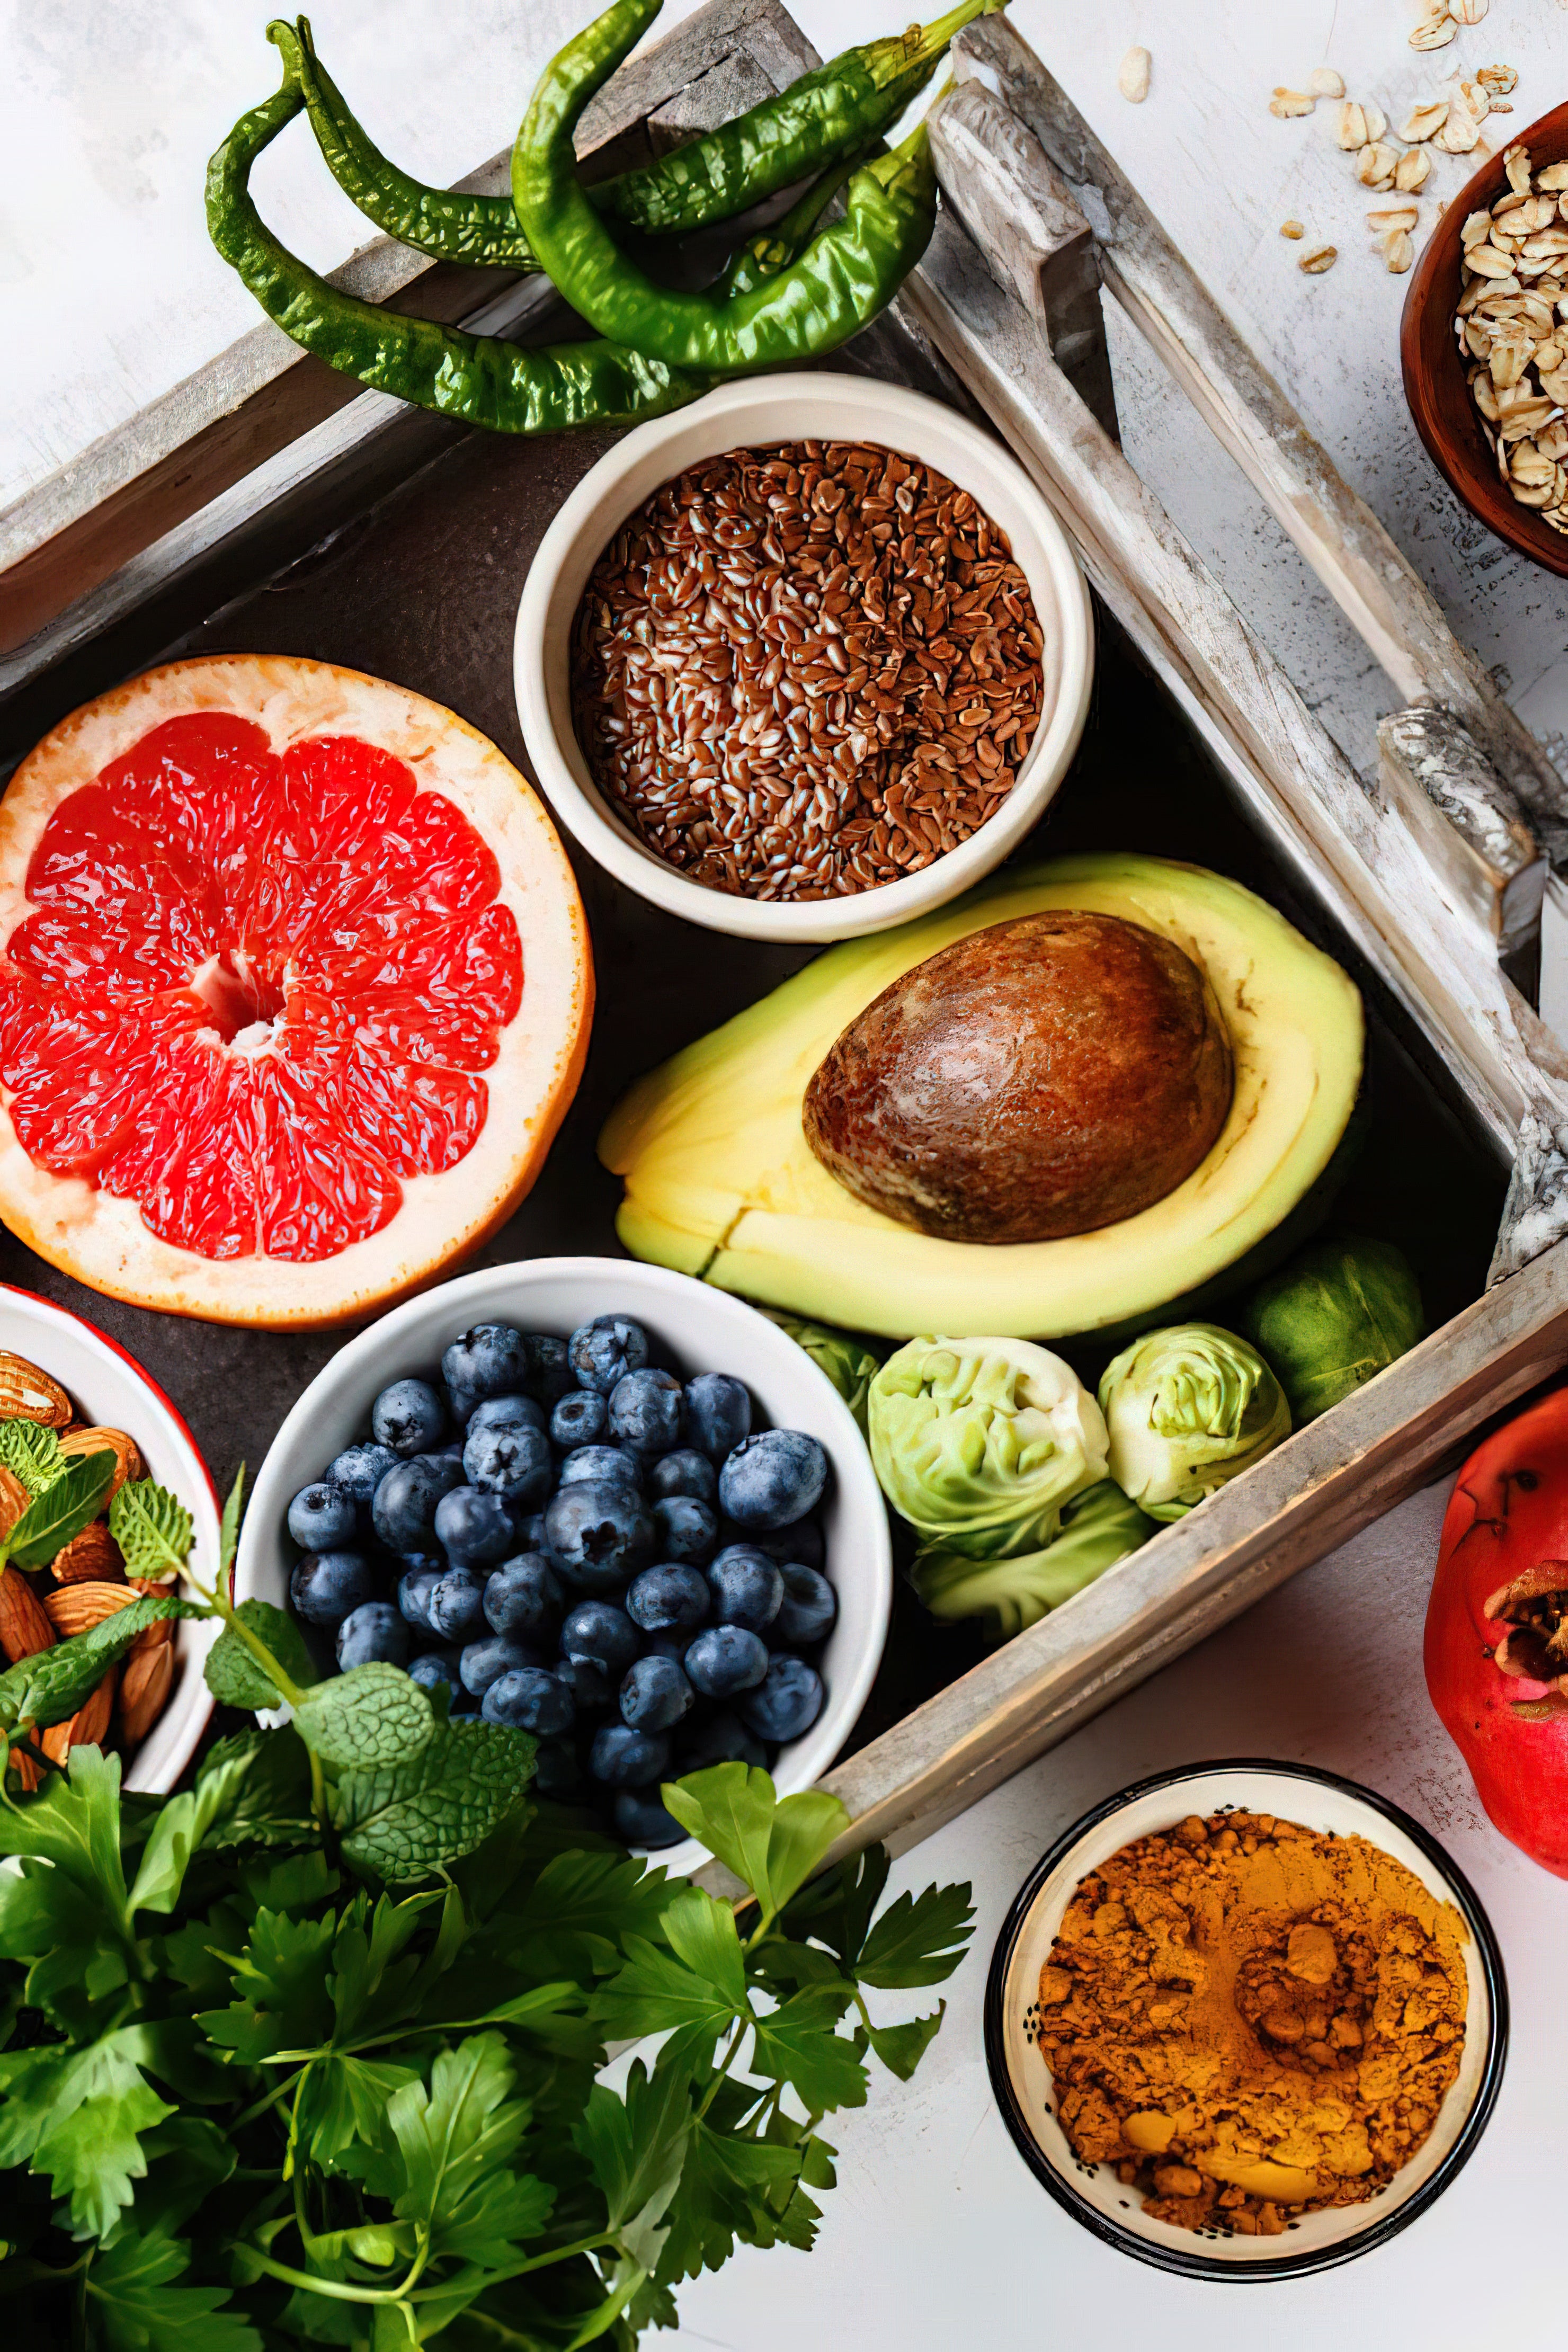 12 Gesunde Nahrungsmittel, die reich an Antioxidantien sind